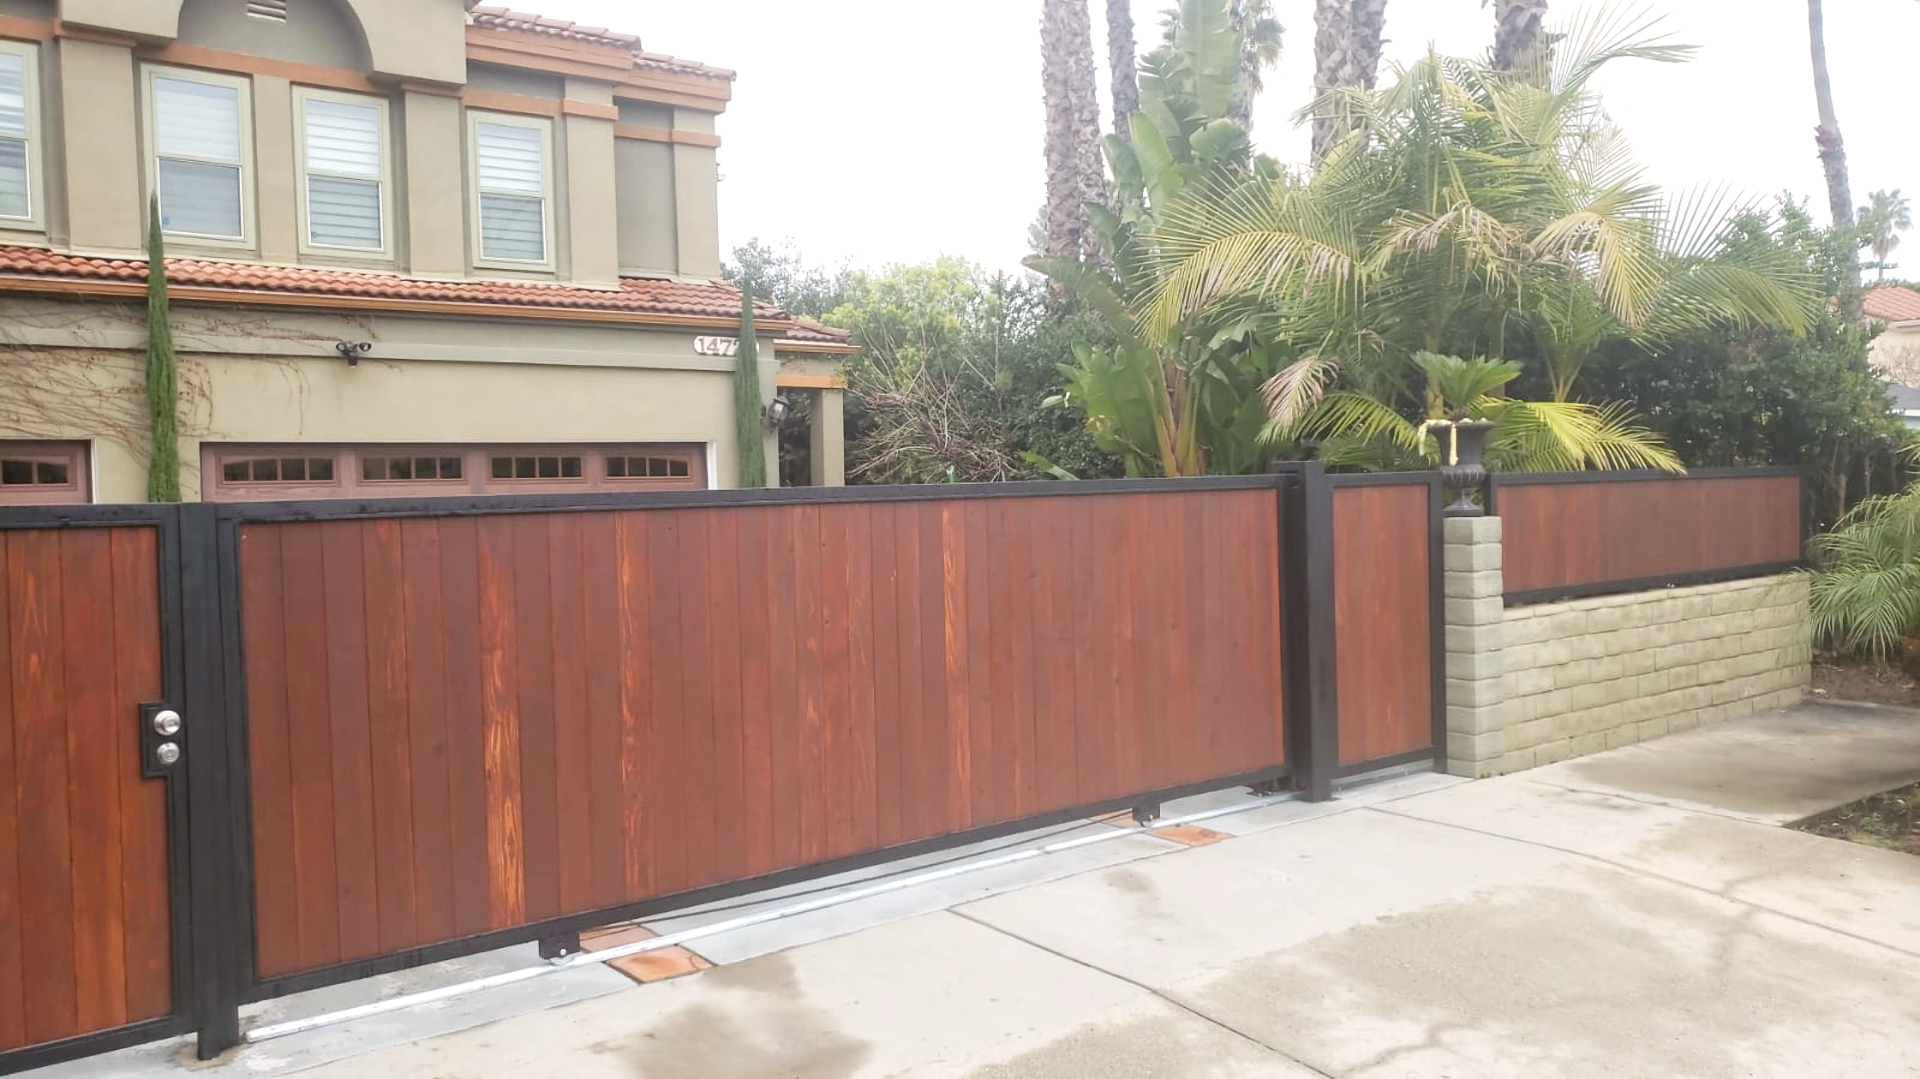 Driveway Gate Installation in Sherman Oaks, CA 91423'